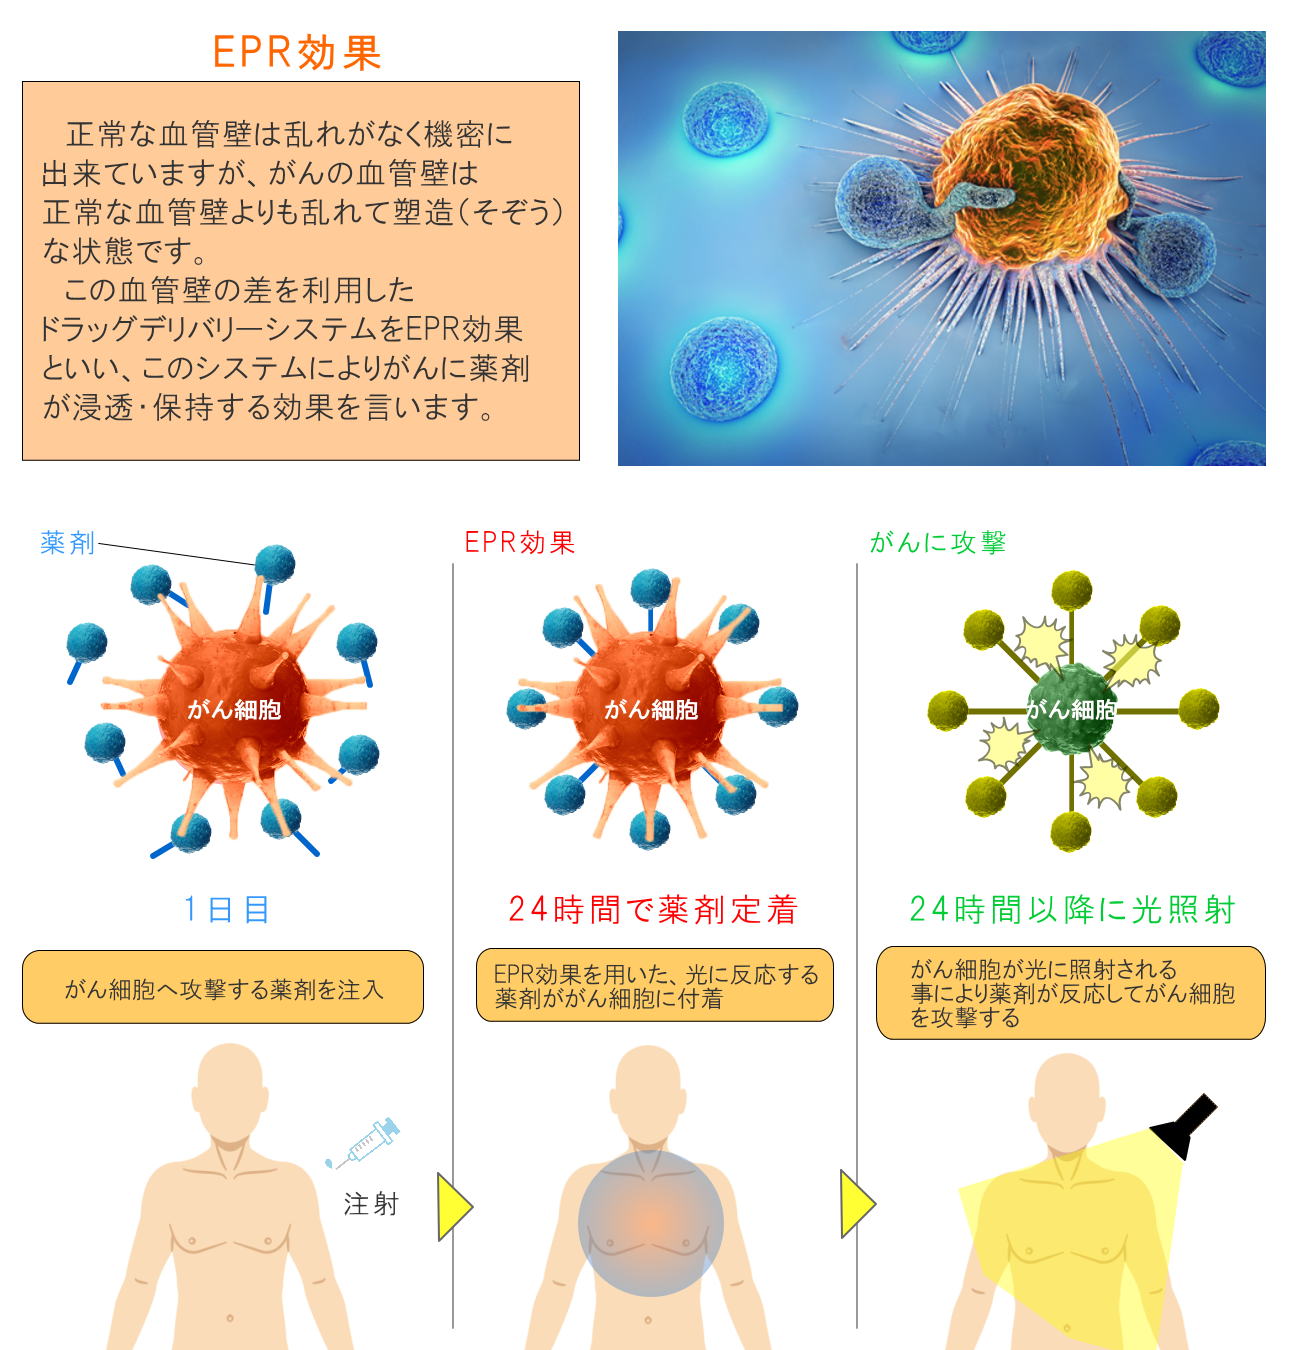 茨城でがん治相談療をお考えの方 | 光免疫療法導入TGC東京がんクリニック